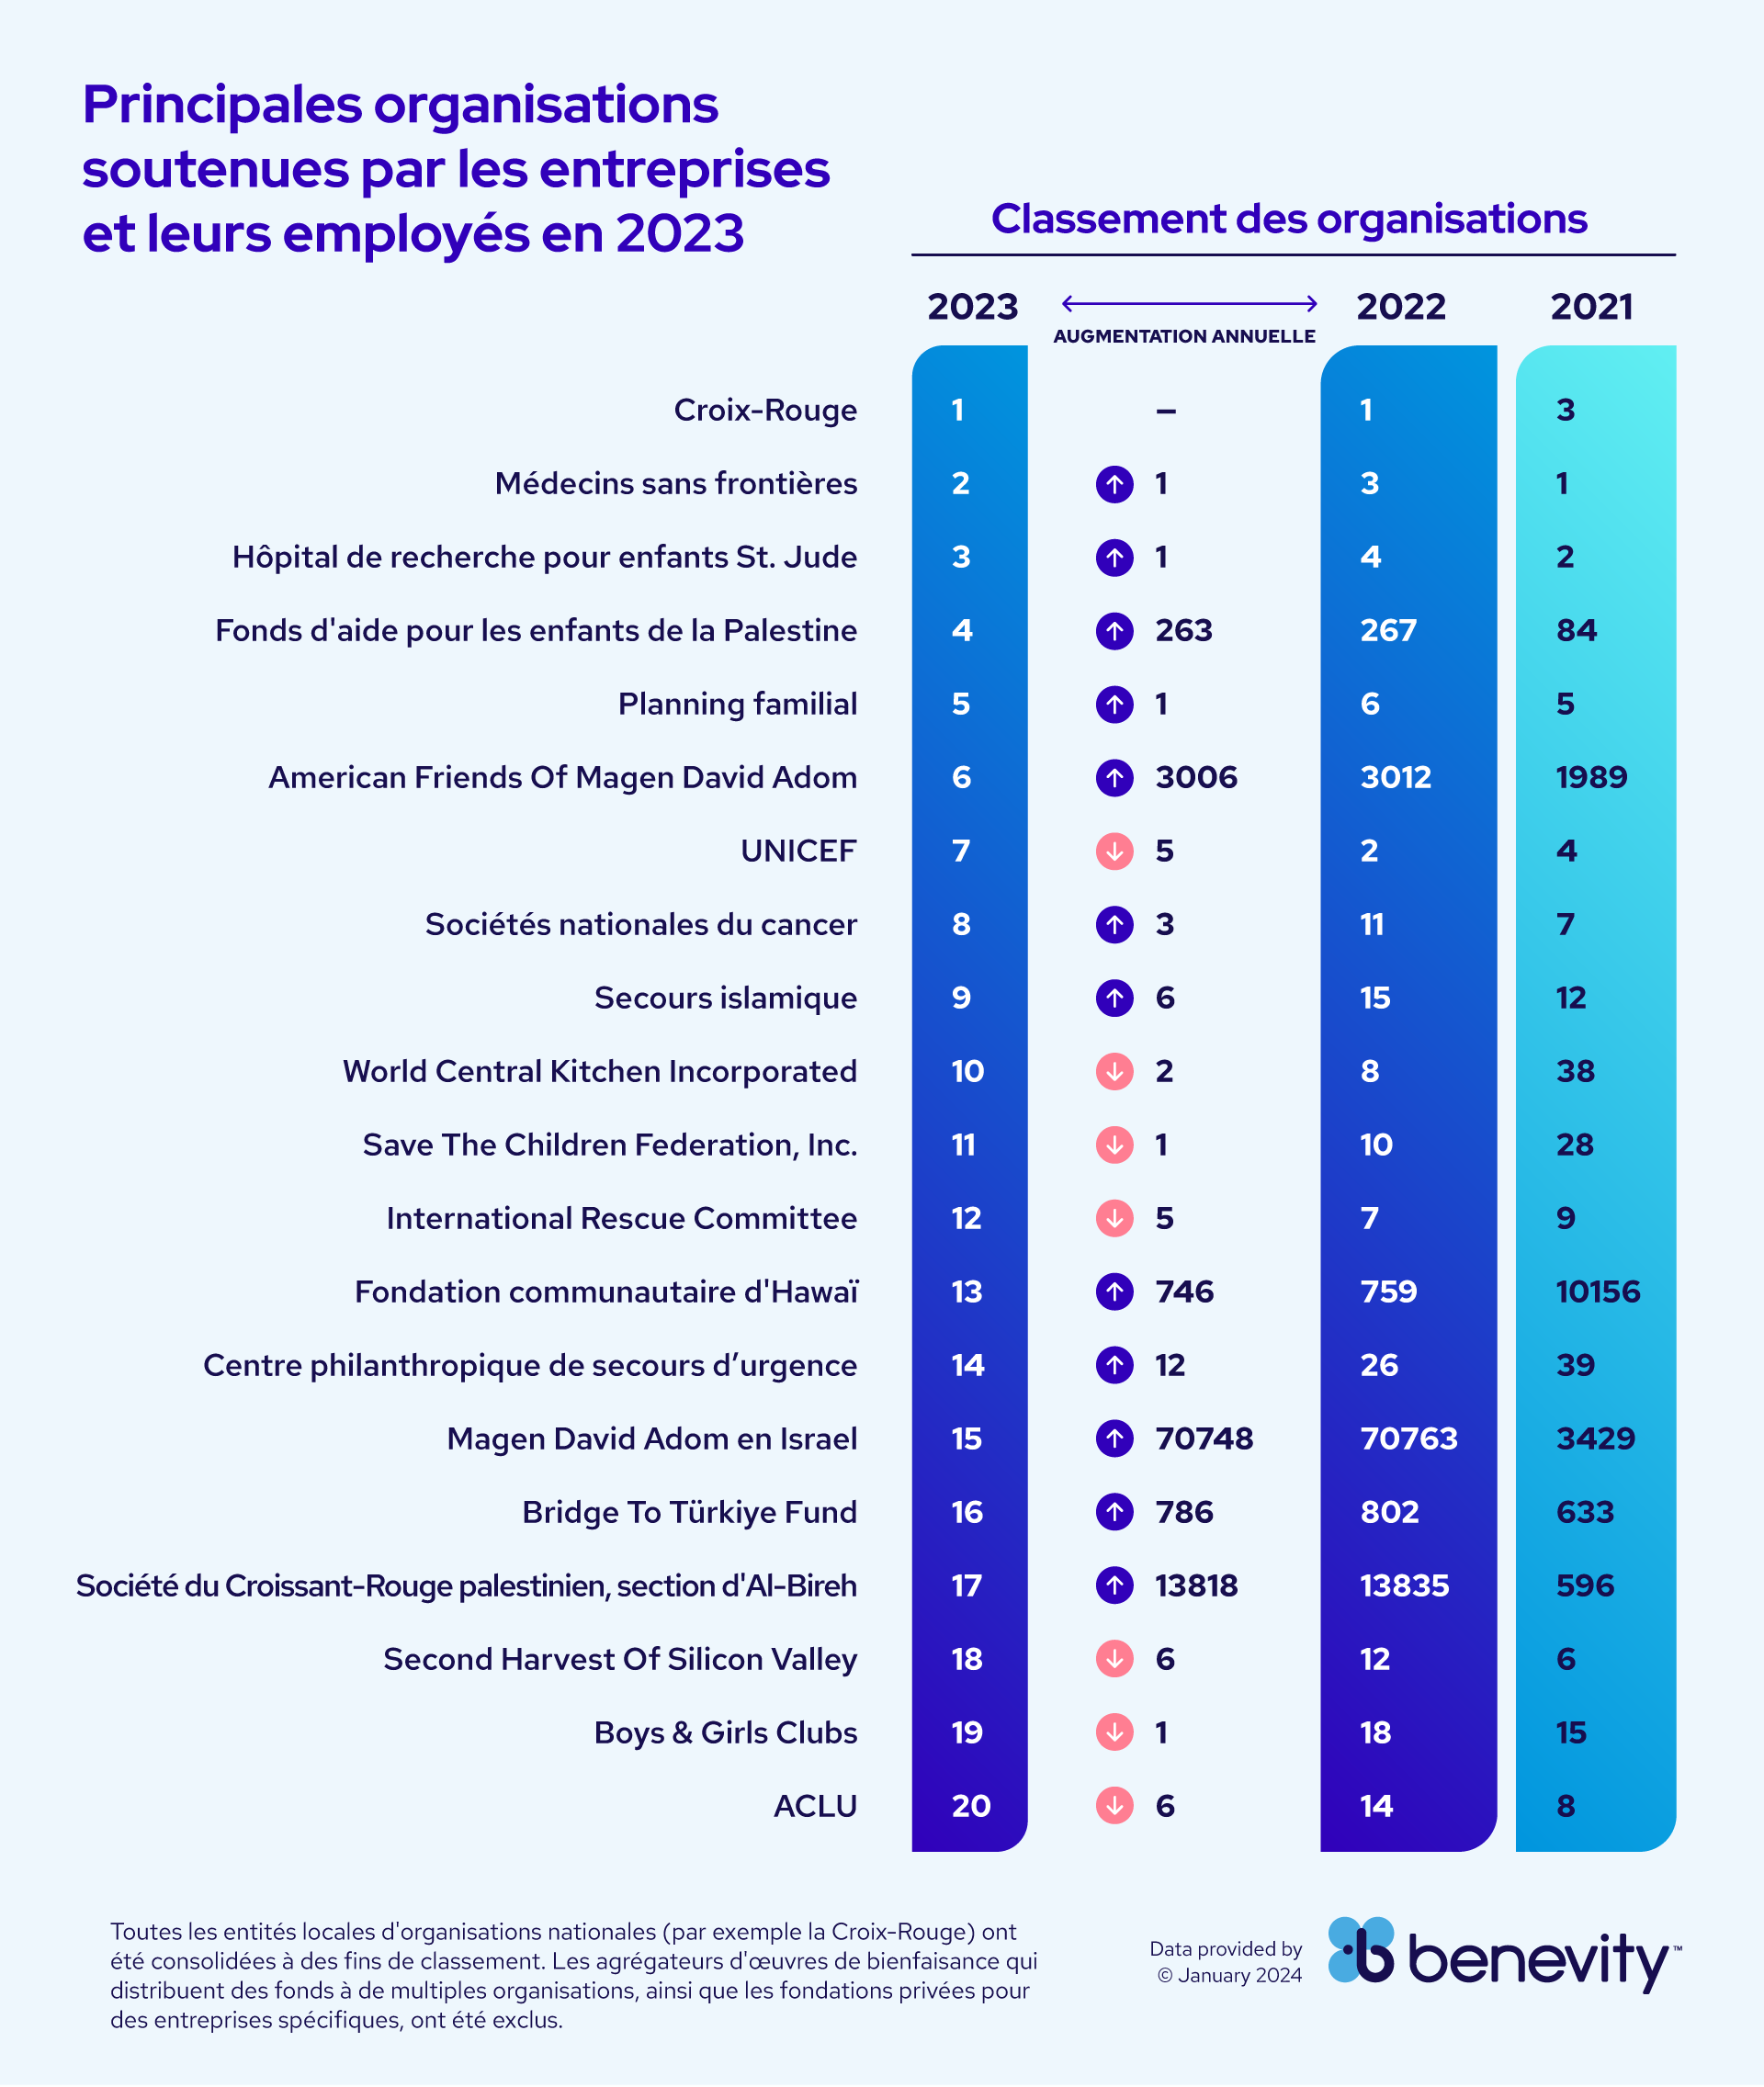 Principales organizations soutenues par les entreprises et leurs employés en 2023